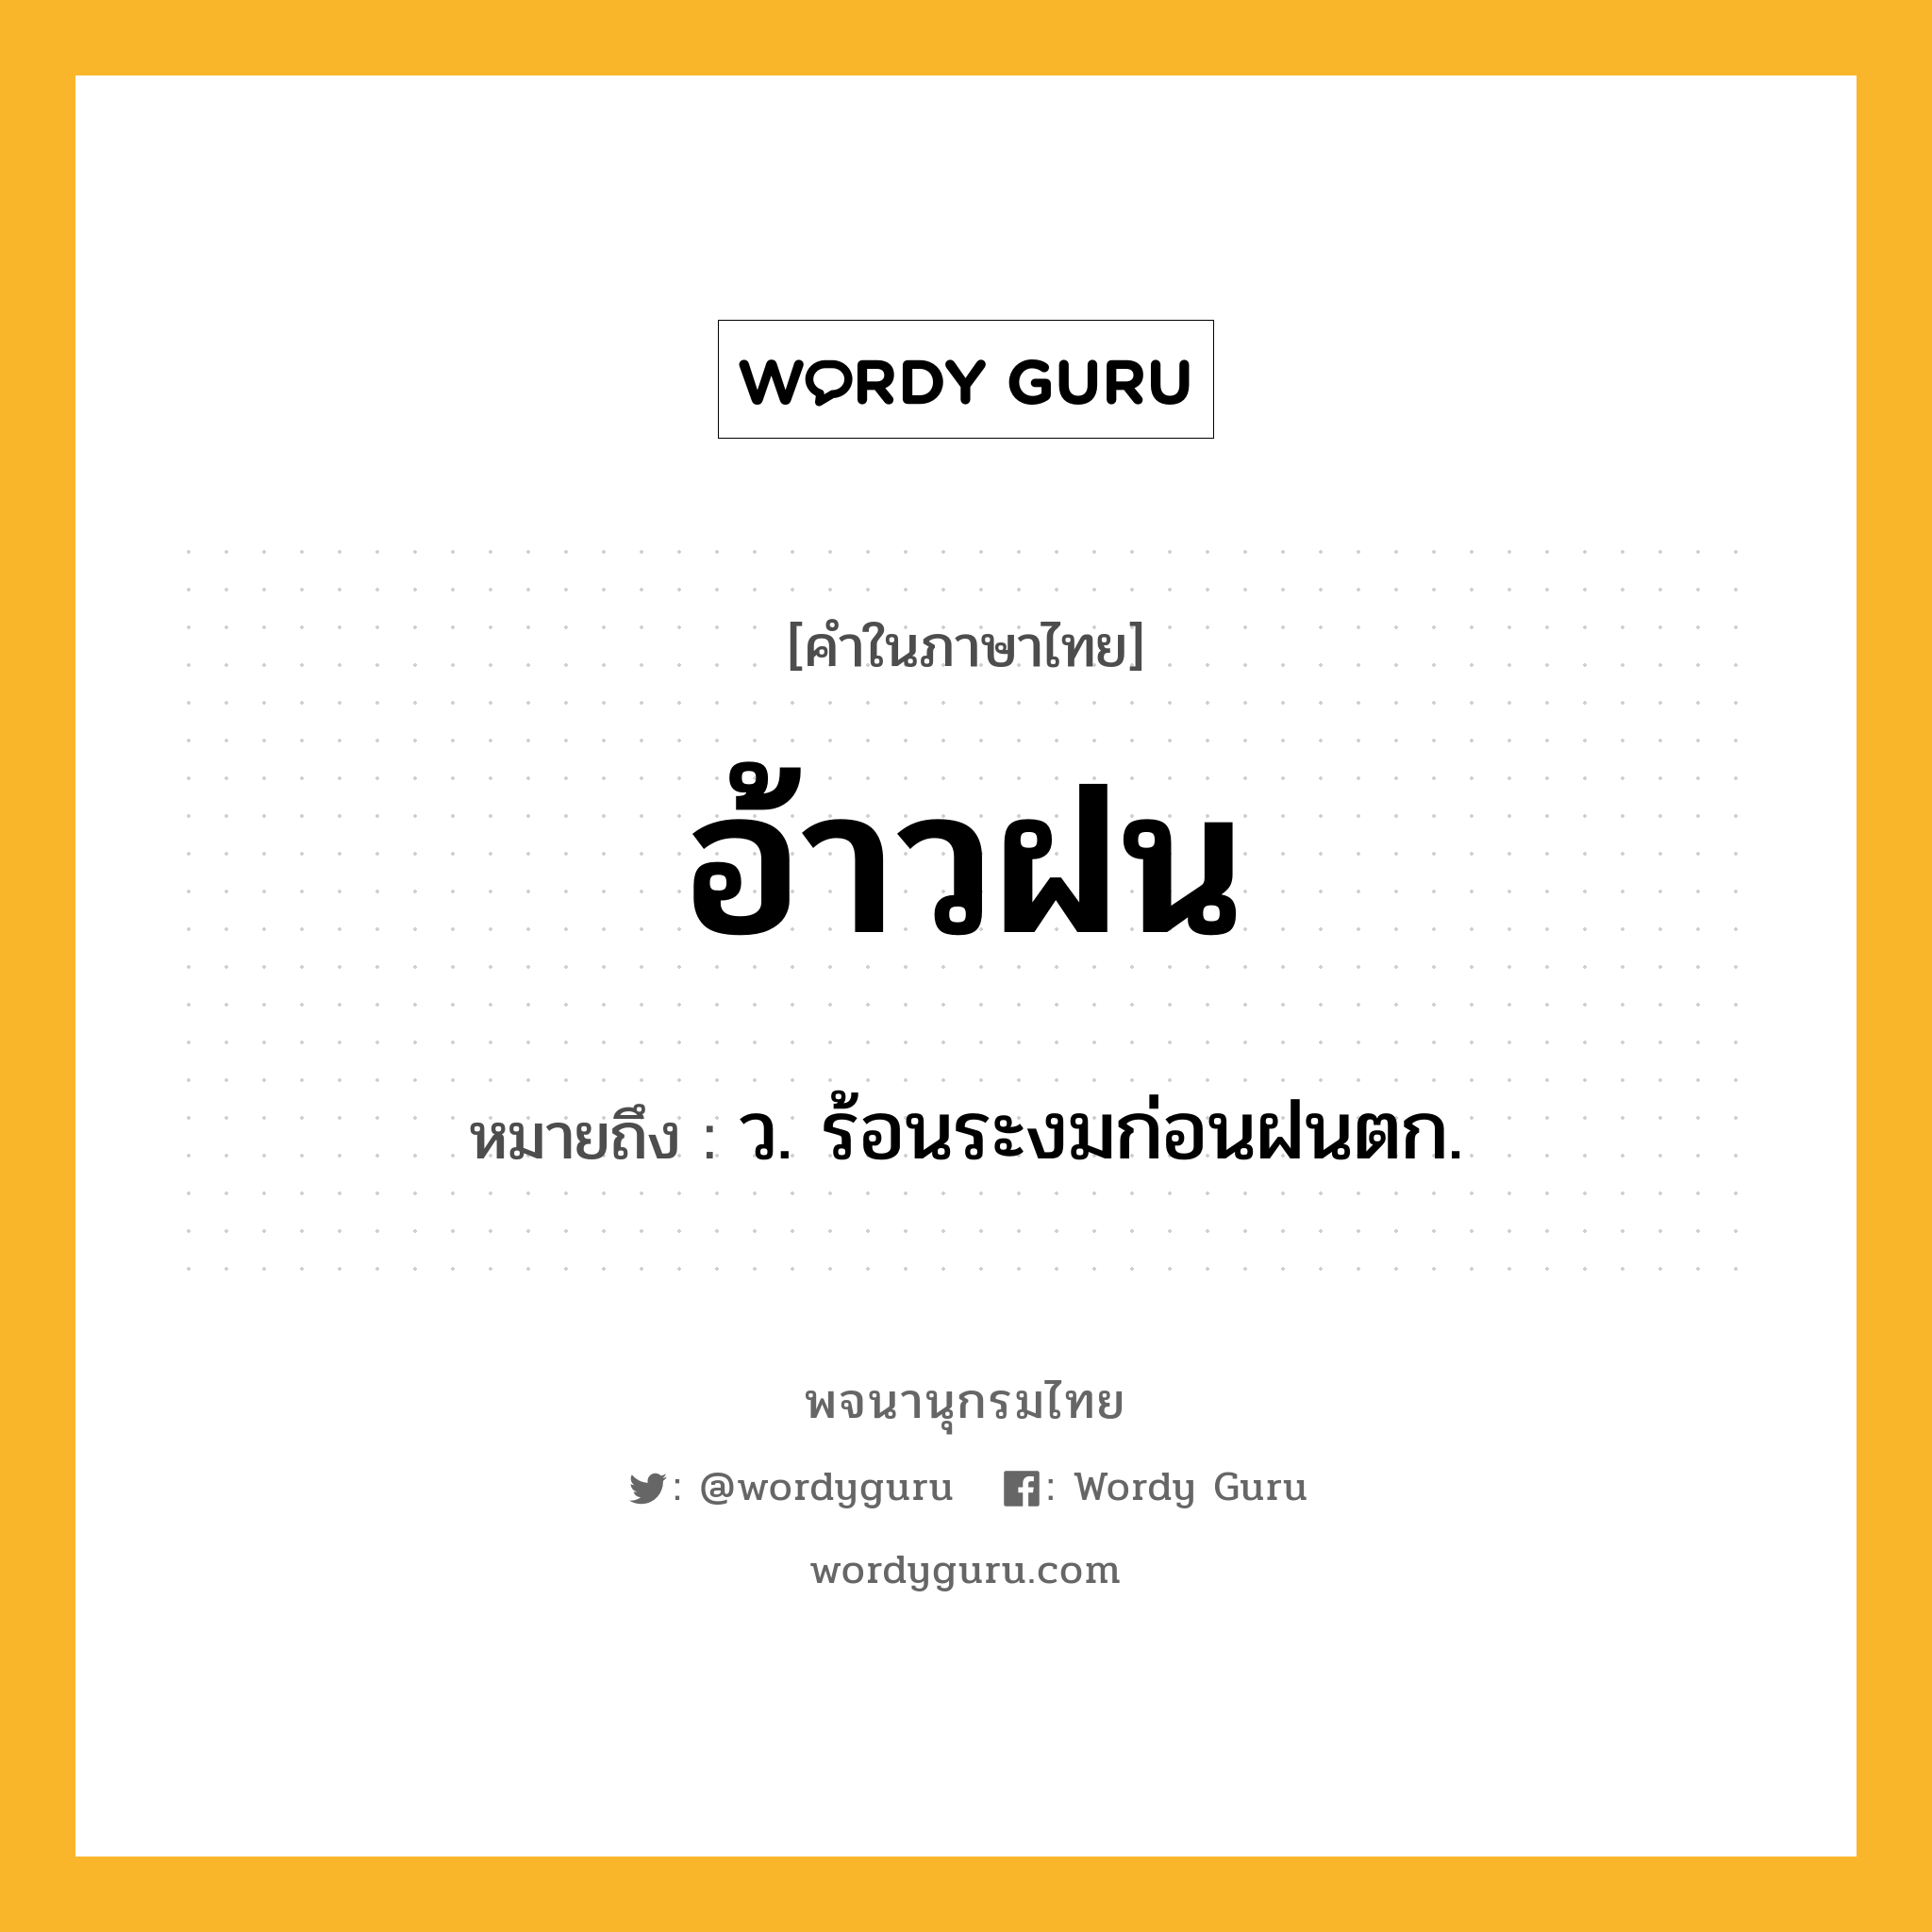 อ้าวฝน หมายถึงอะไร?, คำในภาษาไทย อ้าวฝน หมายถึง ว. ร้อนระงมก่อนฝนตก.